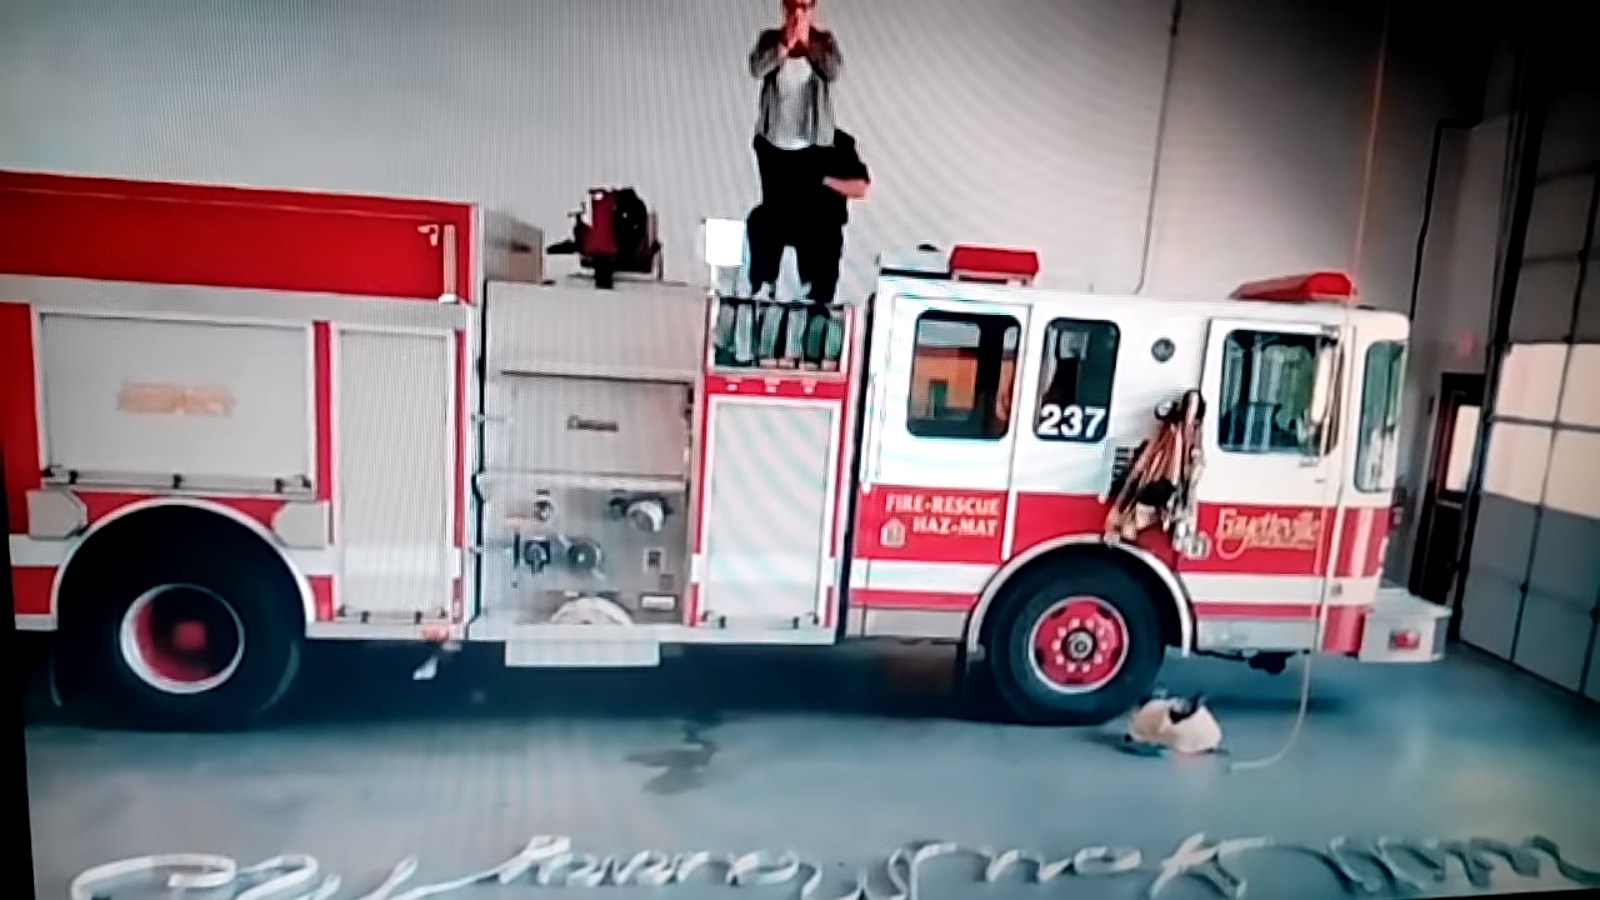 رجل إطفاء أمريكى يطلب الزواج من صديقته بخرطوم مياه